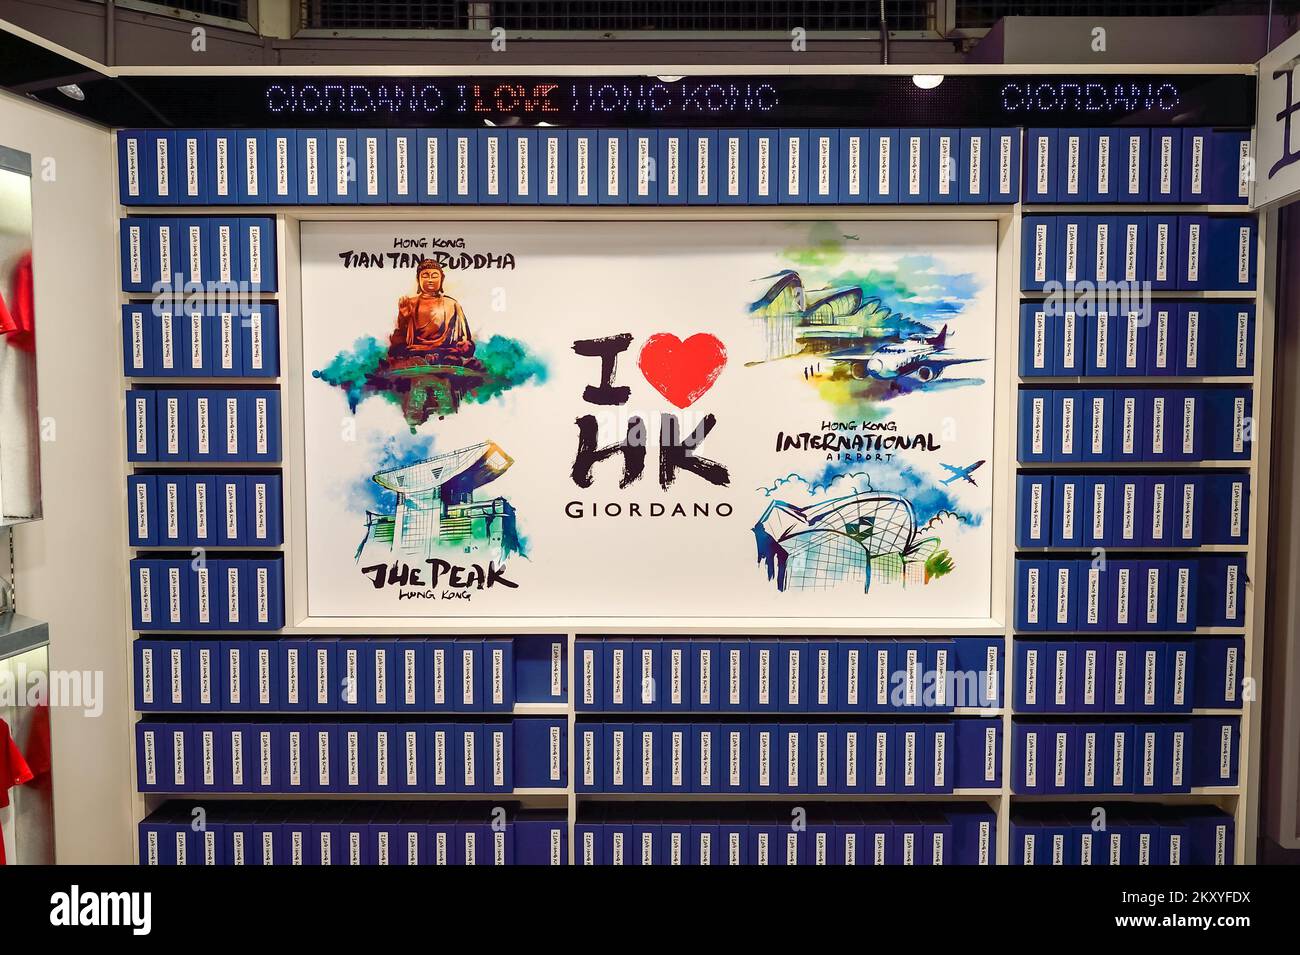 HONG KONG - JUNE 04, 2015: Hong Kong International Airport interior. Hong Kong International Airport is the main airport in Hong Kong. It is located o Stock Photo